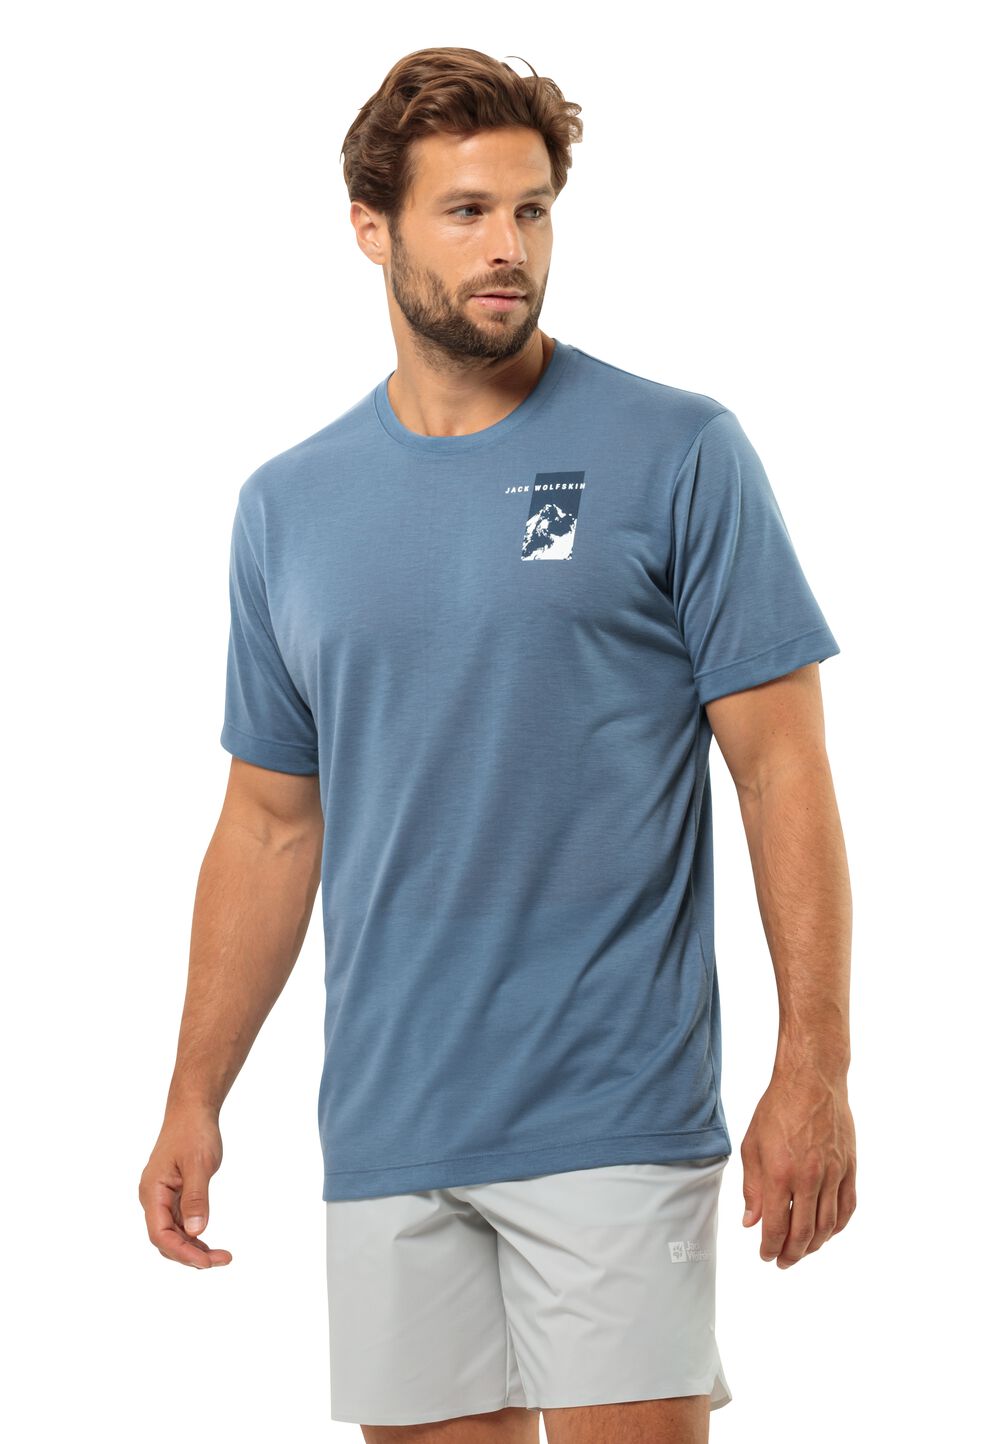 Jack Wolfskin Funktionsshirt Herren Vonnan S/S Graphic T-Shirt Men M elemental blue elemental blue von Jack Wolfskin